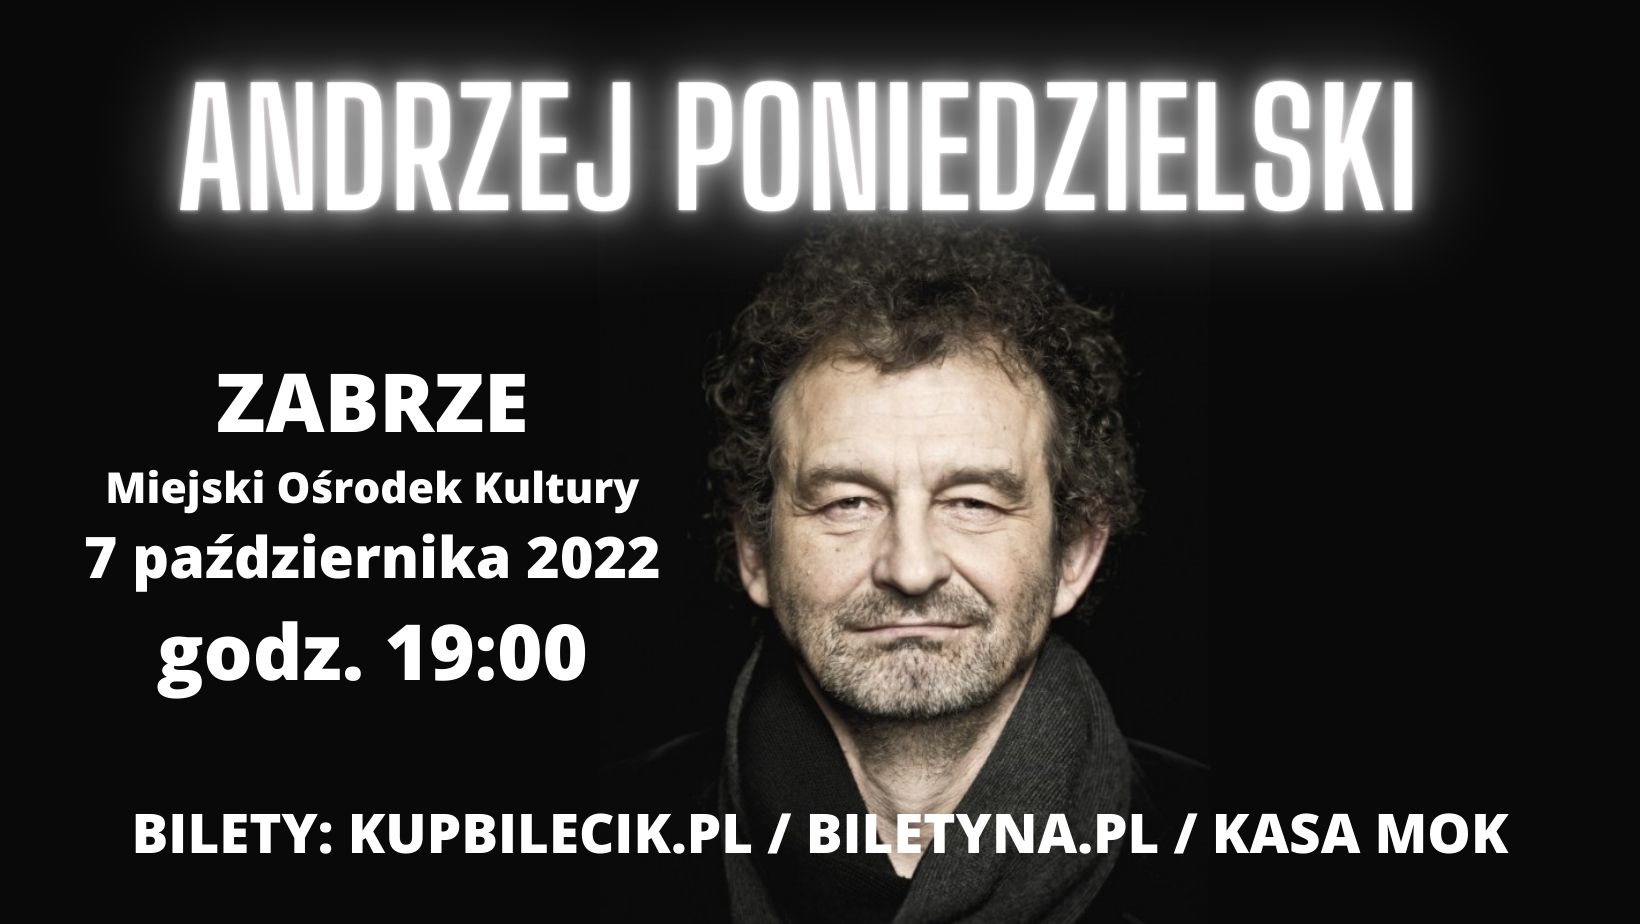 baner promujący wieczór kabaretowy z Andrzejem Poniedzielskim